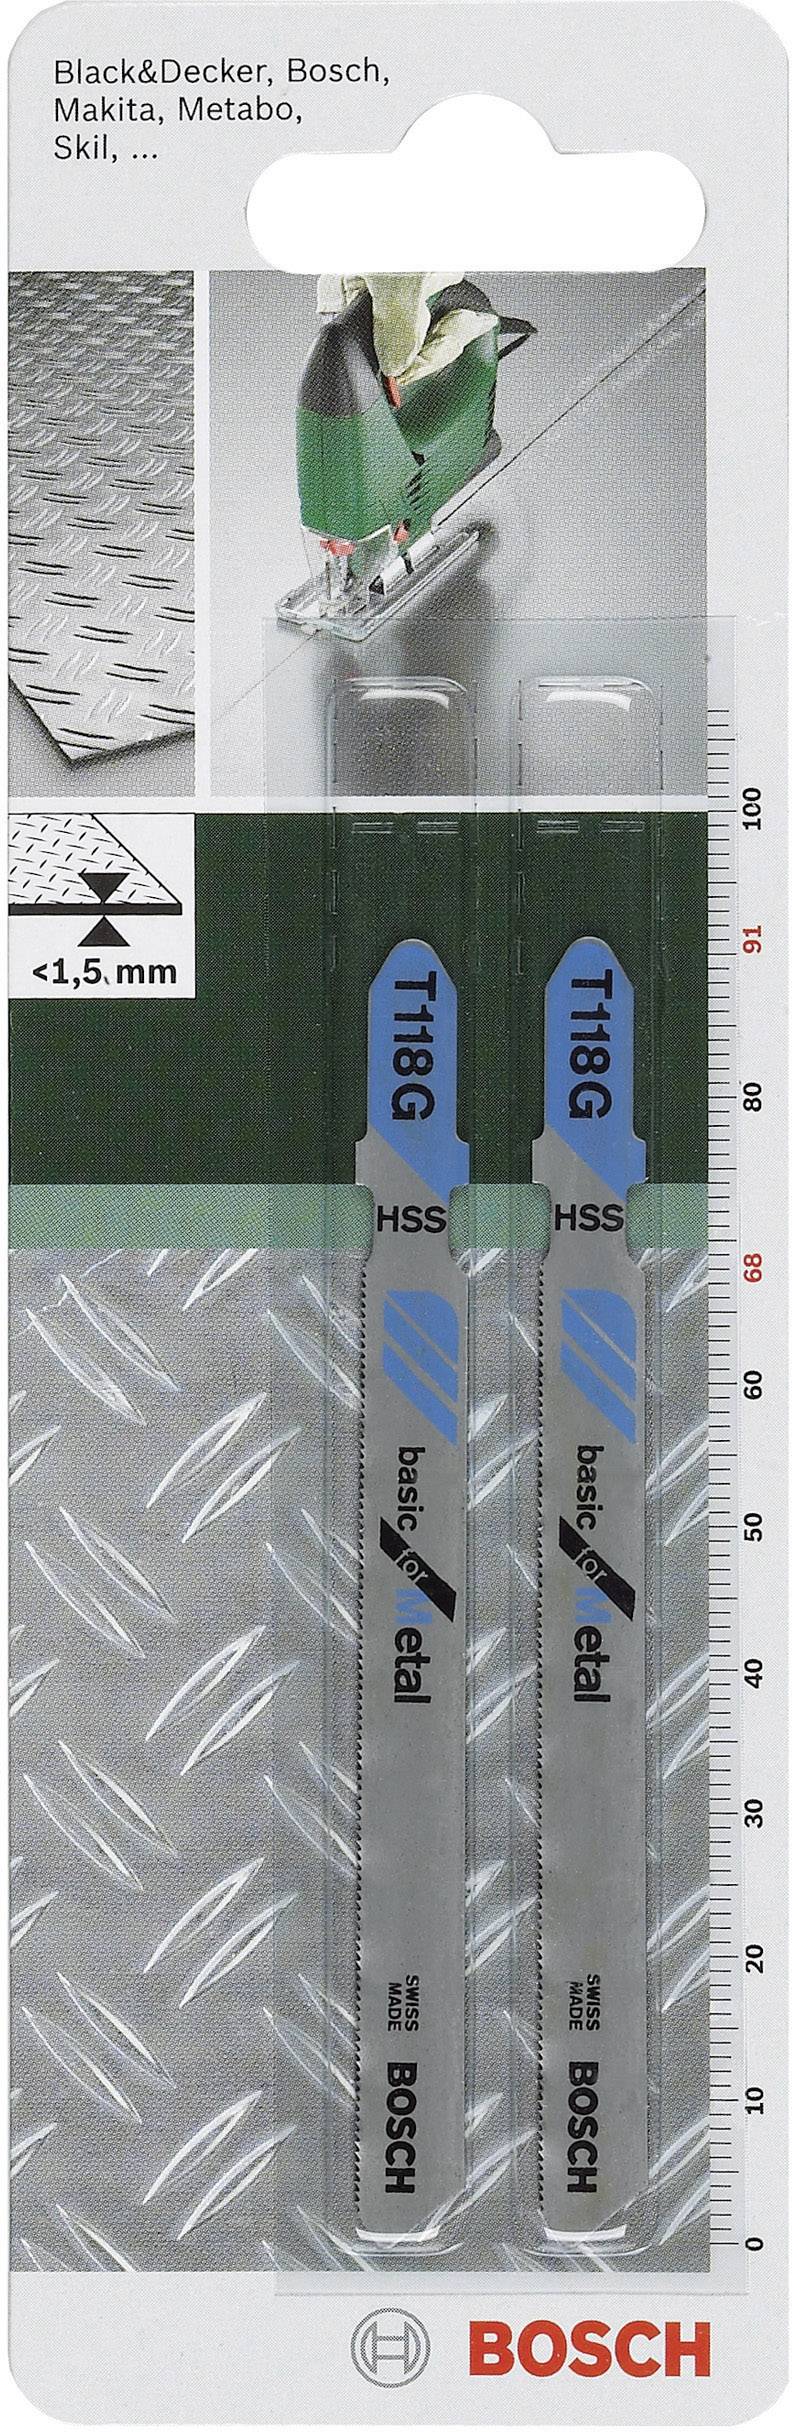 BOSCH Stichsägeblatt HSS, T 118 G 91 mm, 2 St. Sägeblatt (2609256731)